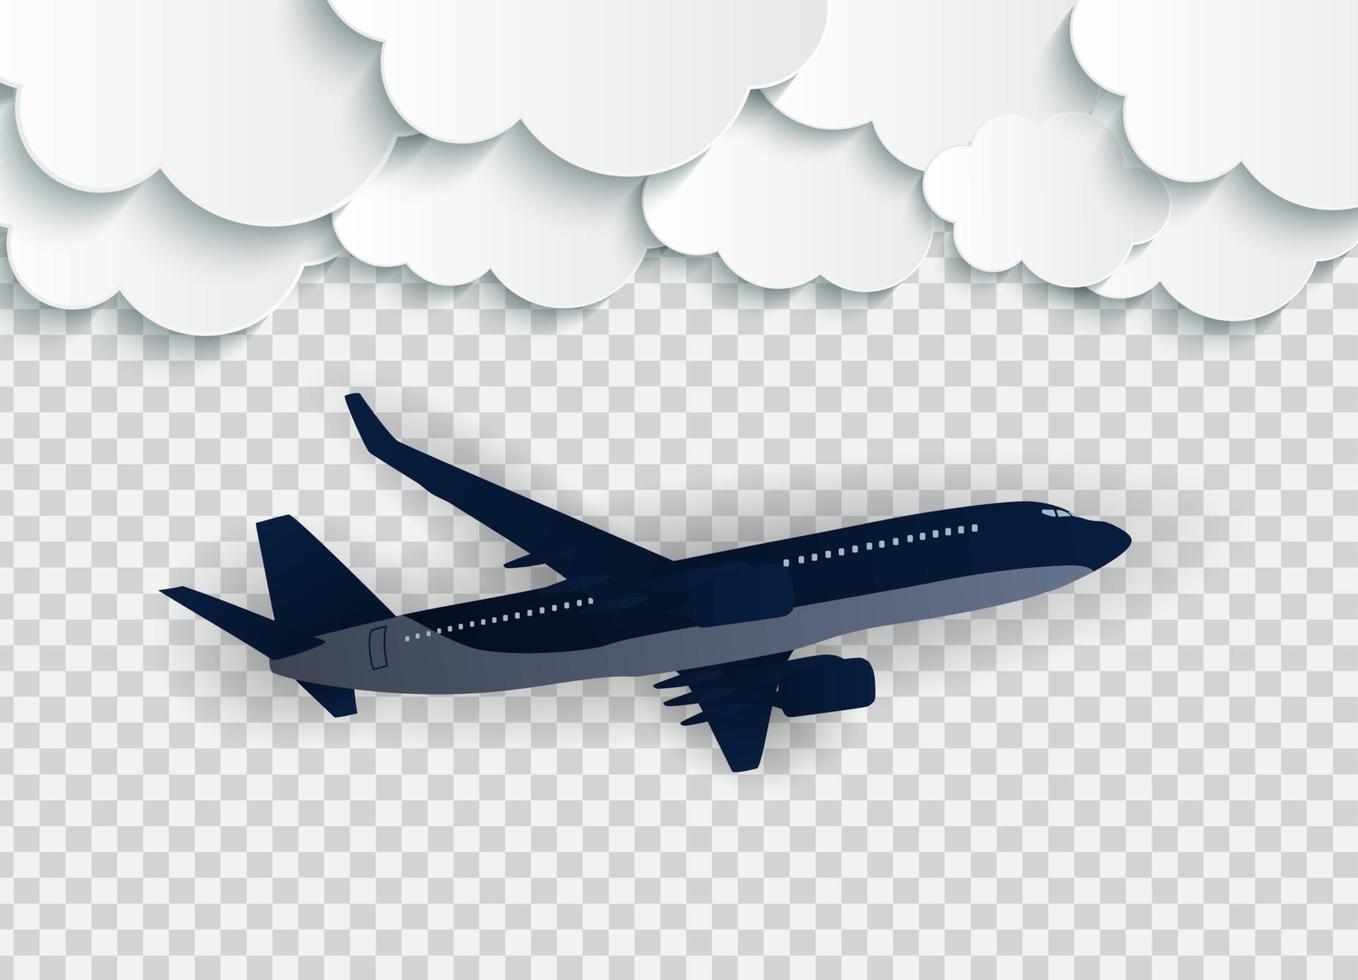 abstrakta moln med flygande realistiska 3d-flygplan på en transparent bakgrund. vektor illustration